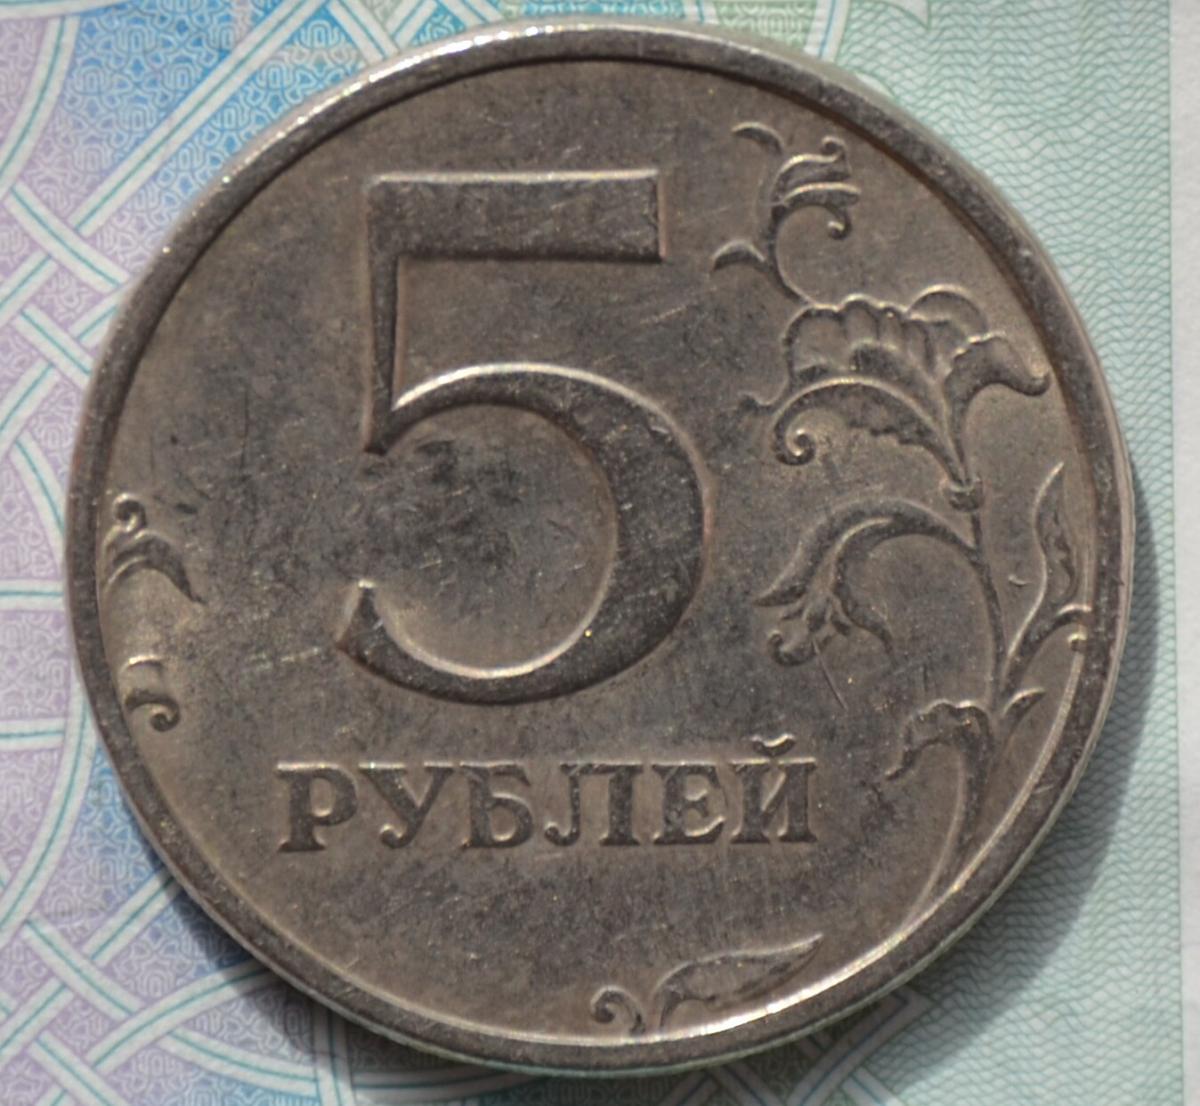 Момента 5 рублей. Редкая монета 5 рублей 1998 года. Редкая Монетка пять рублей 1998 года. 5 Рублей 1998 СПМД редкая. Редкие монет 1997.